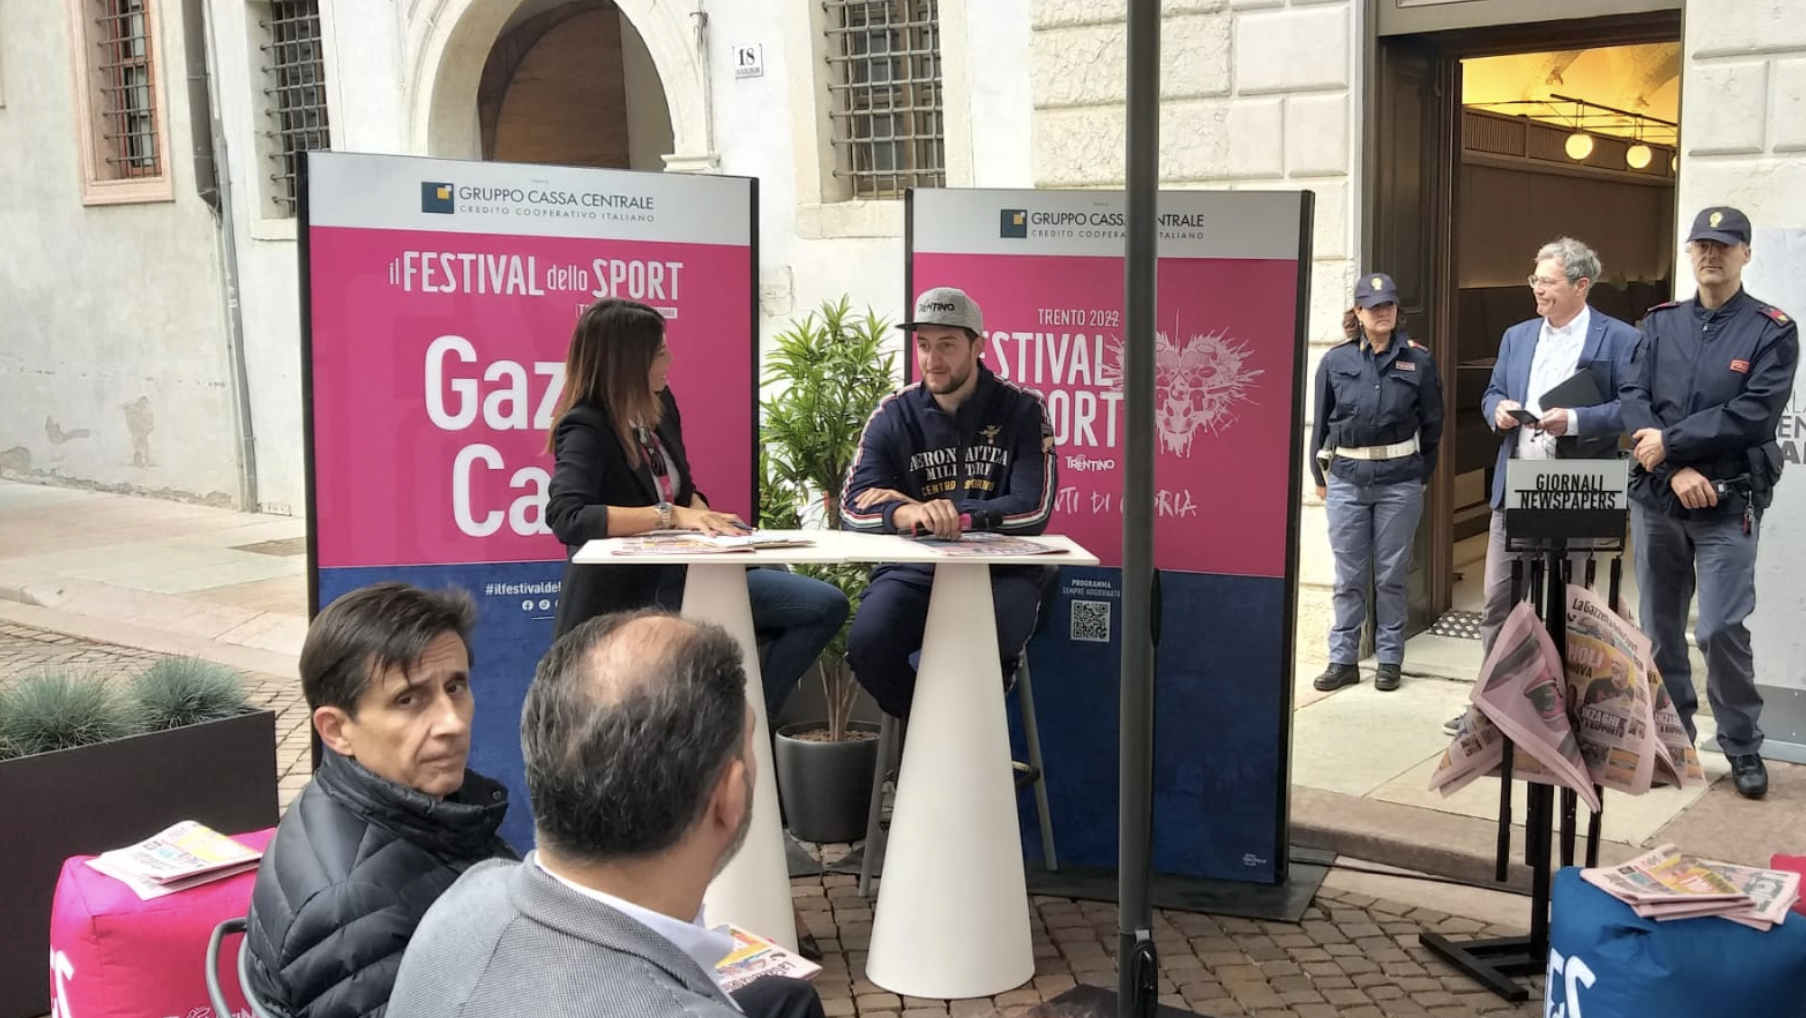 Festival dello Sport 2022: al format Gazza Cafè in via Belenzani (Barbara Pedrotti giornalista sportiva, Amos Mosaner campione olimpico di curling)